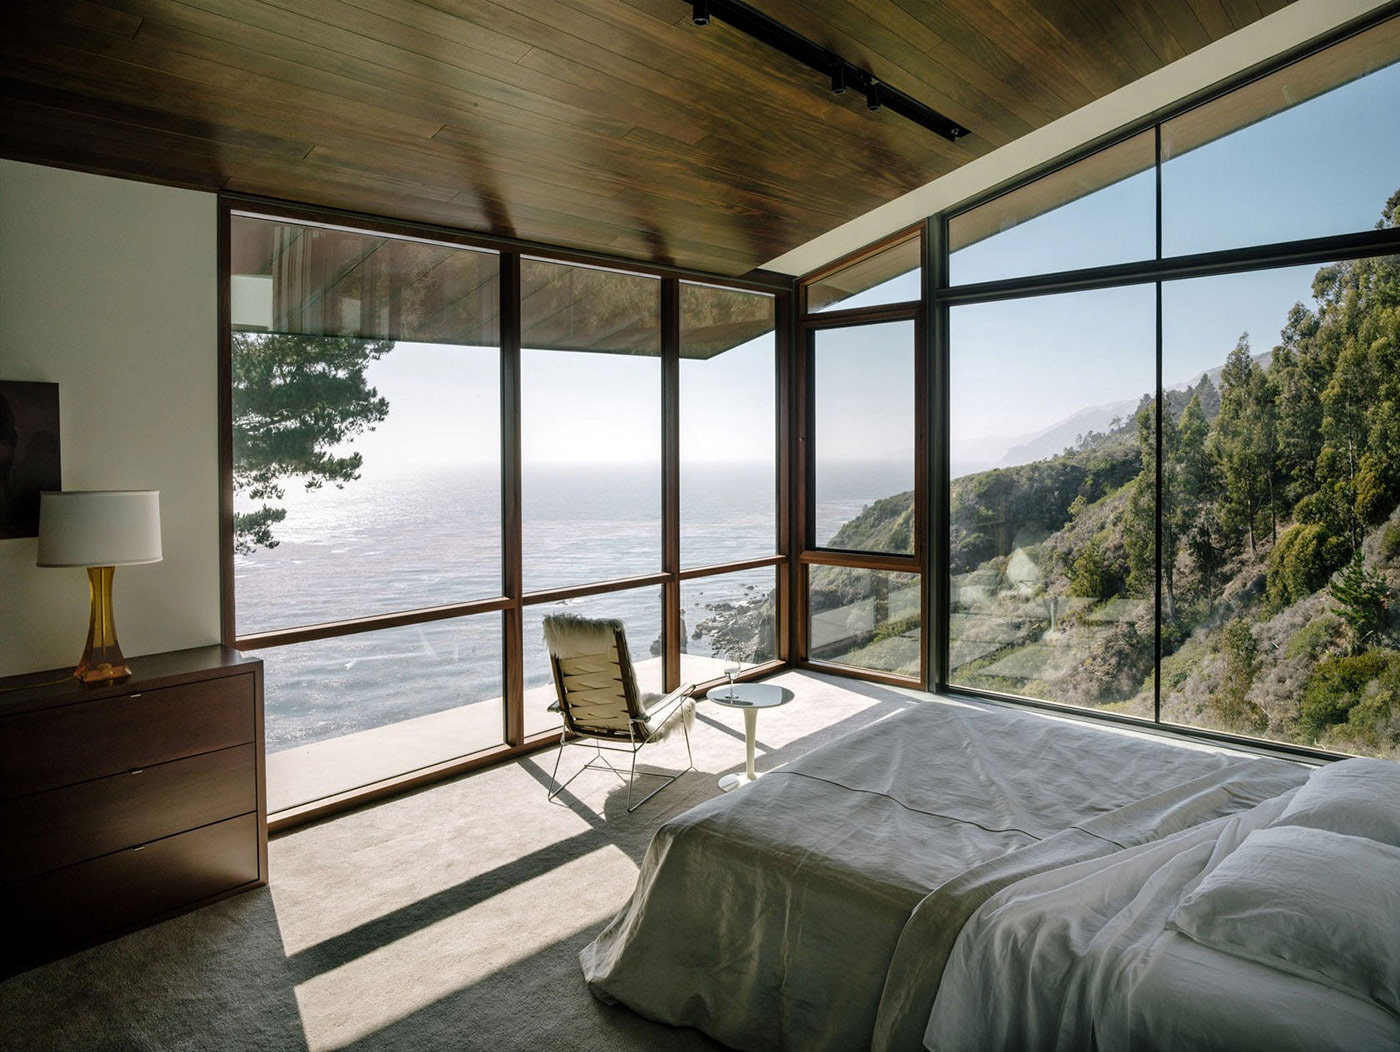 nội thất phòng ngủ trong một ngôi nhà nông thôn với cửa sổ nhìn ra toàn cảnh